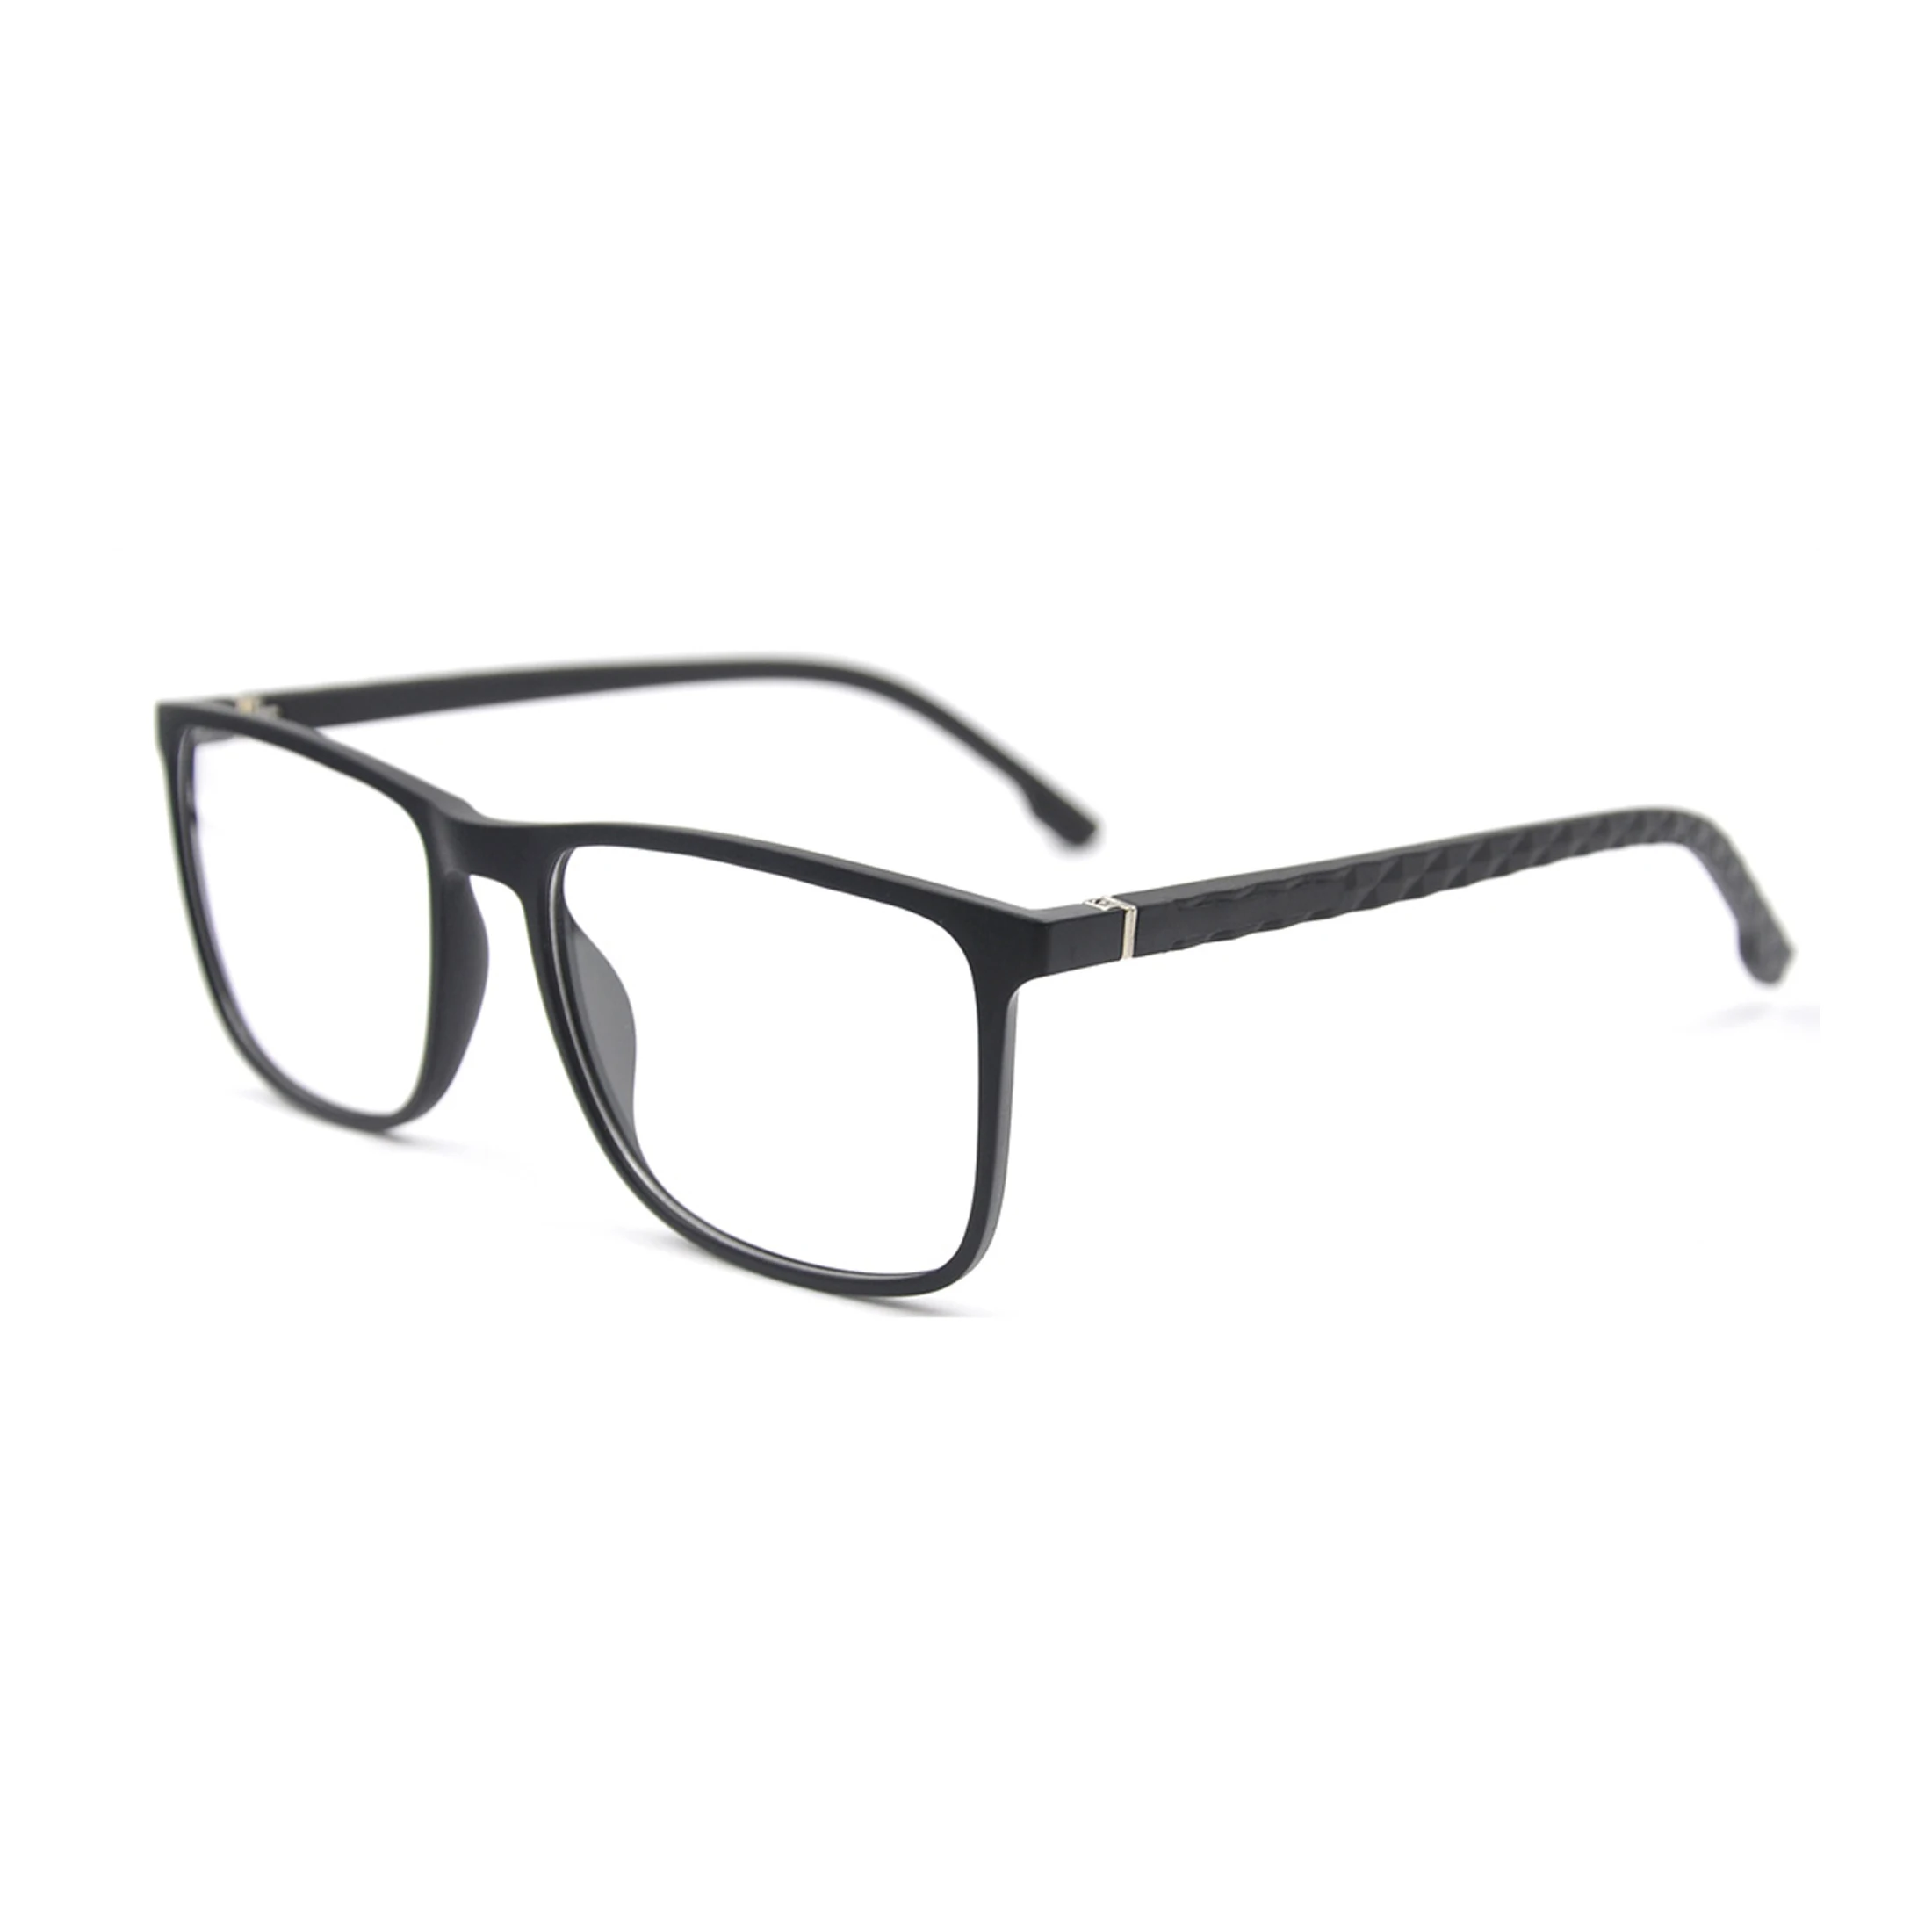 

Promotion Low Price Eyeglasses FramesTR90 Oversize Big Optical Glasses Frames Best Selling